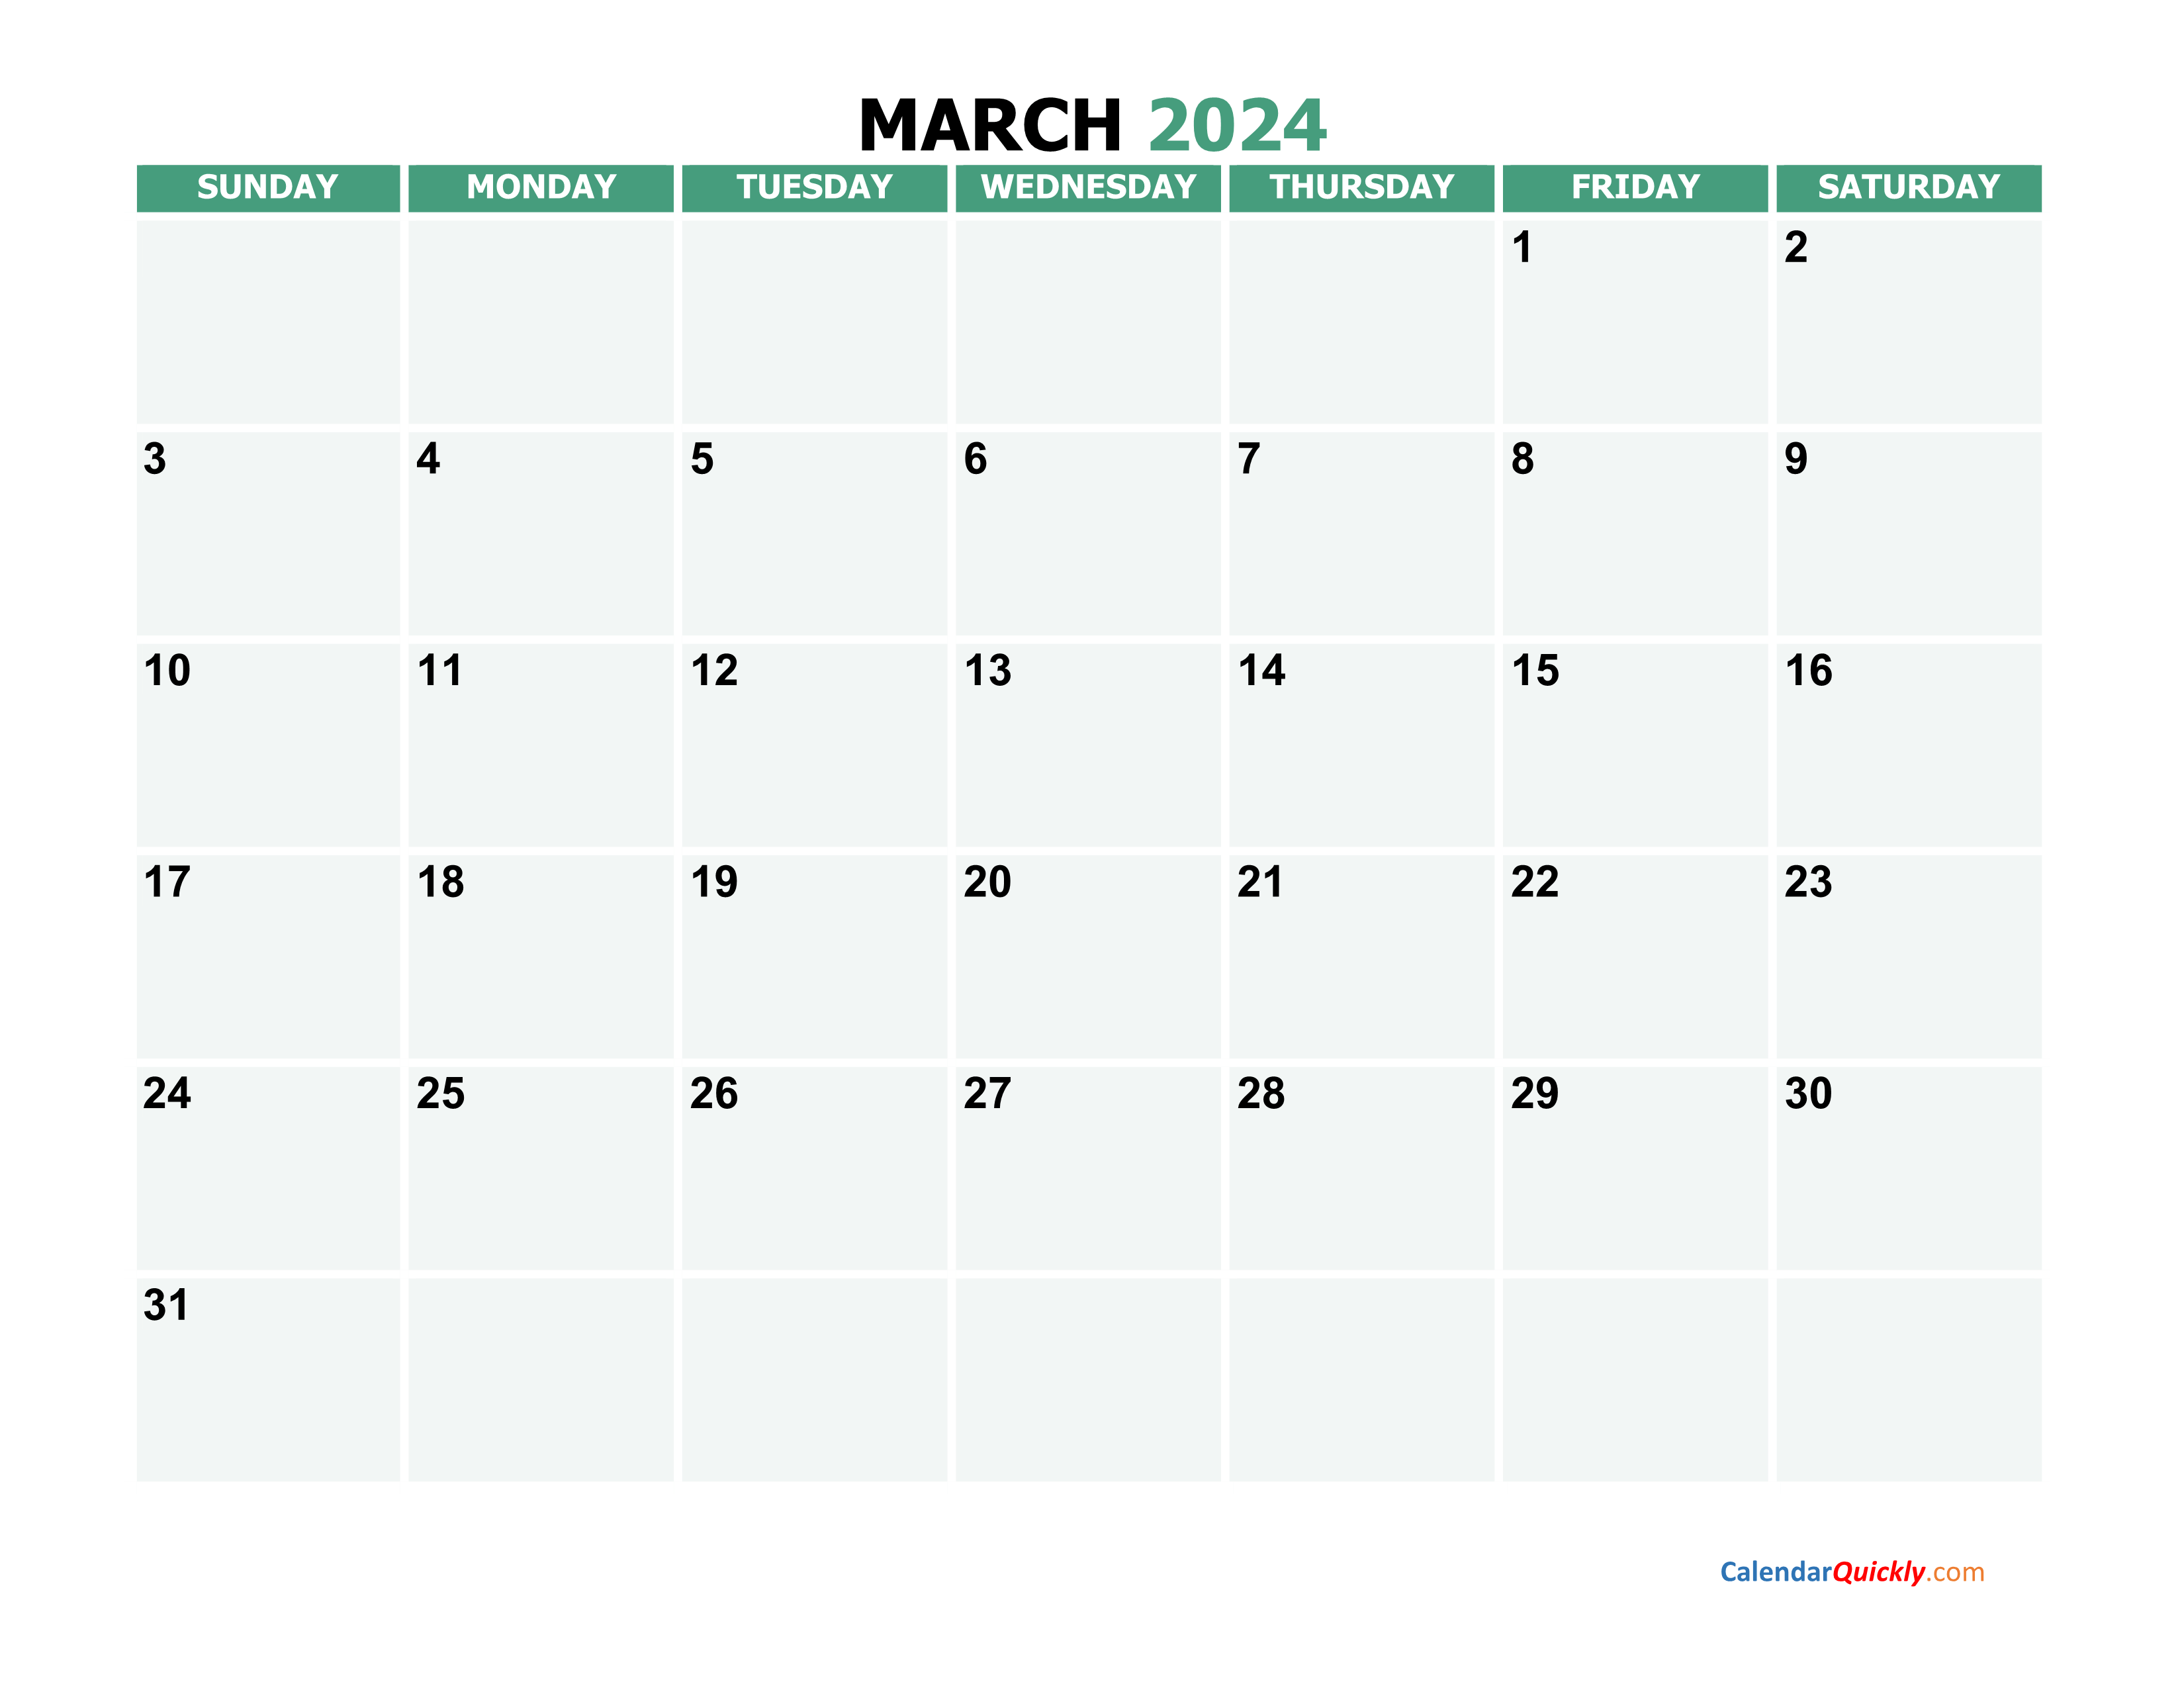 March 2024 Printable Calendar Calendar Quickly